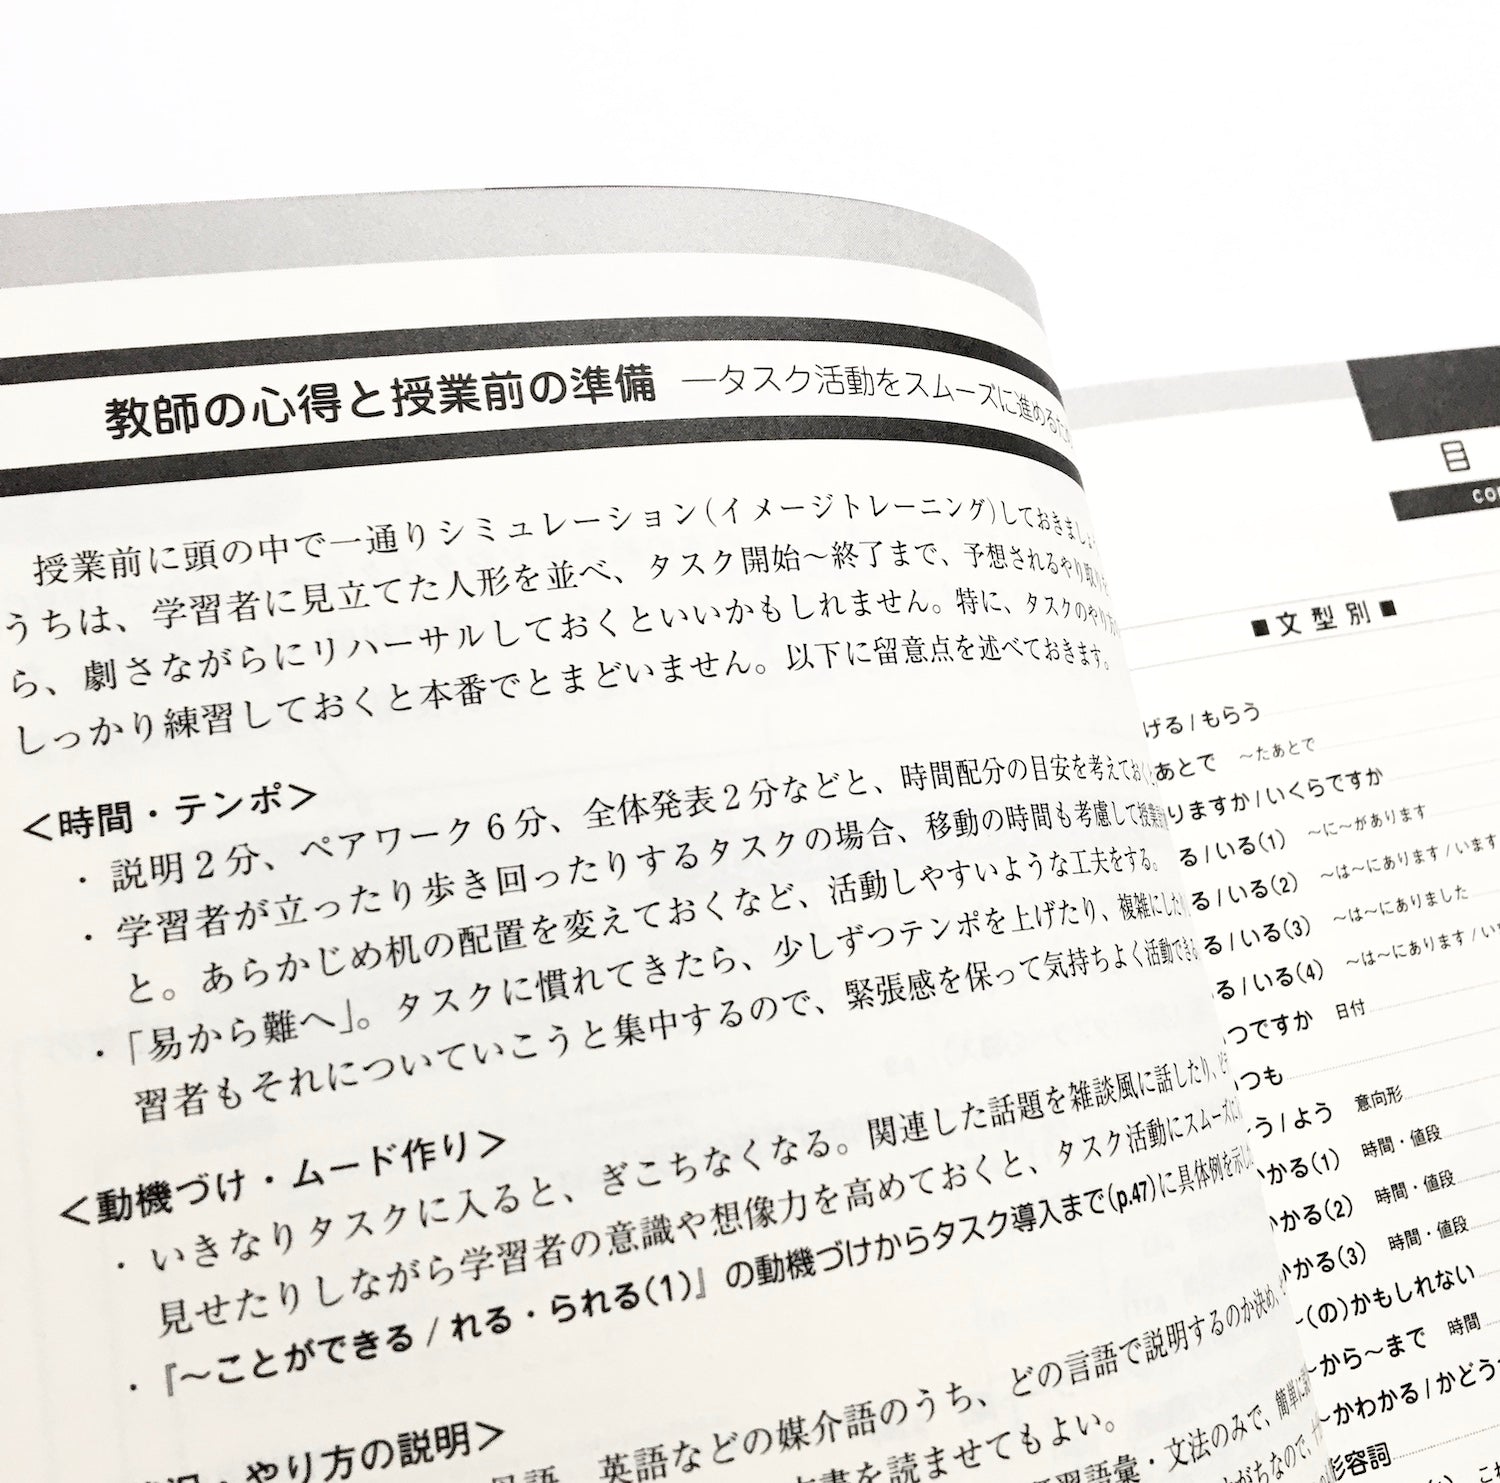 おたすけタスク 初級日本語クラスのための文型別タスク集 – Tsubaki japanese bookstore